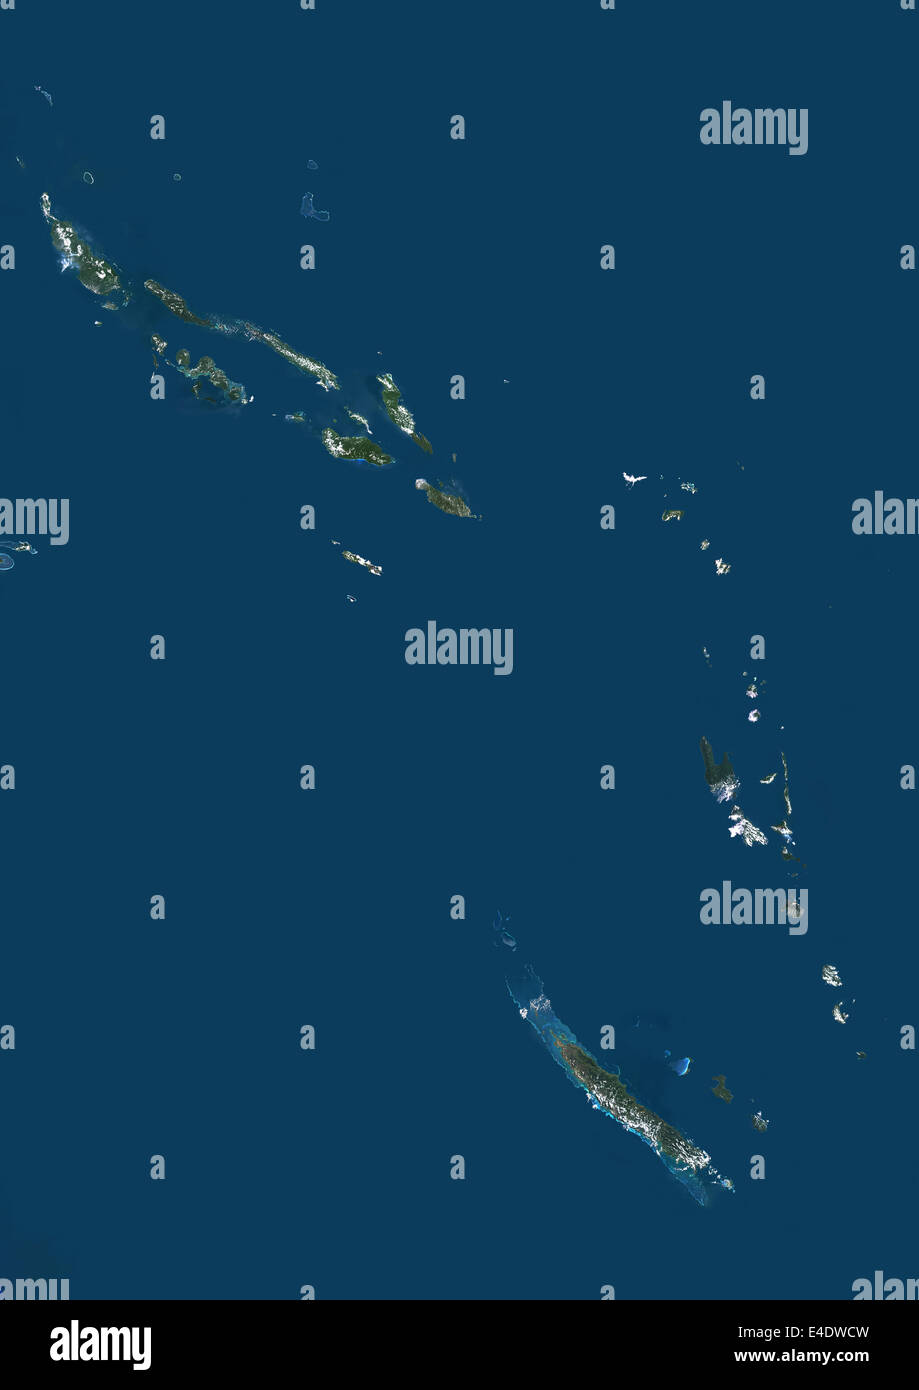 Vanuatu y las Islas Salomón, en Melanesia, Oceanía, Imagen de satélite de  color verdadero. Vista satélite de Vanuatu y las islas Salomón loca  Fotografía de stock - Alamy